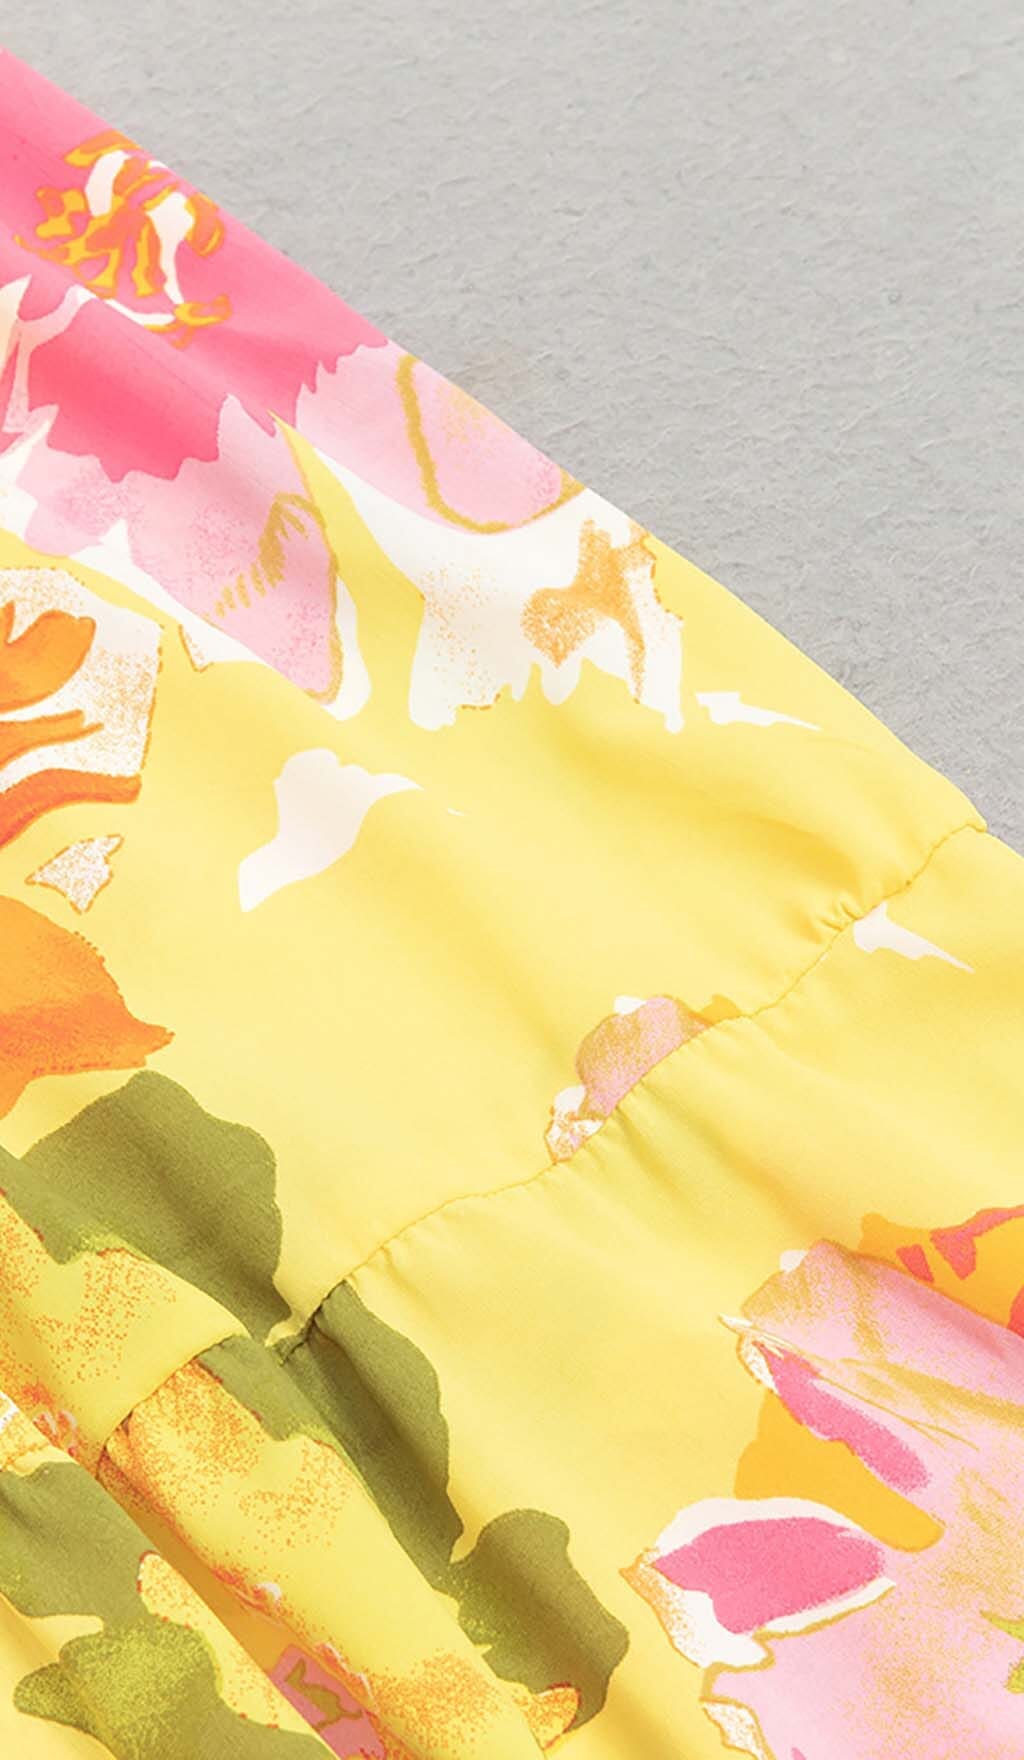 Plus Size Floral Print Midi Dress In Multicolor